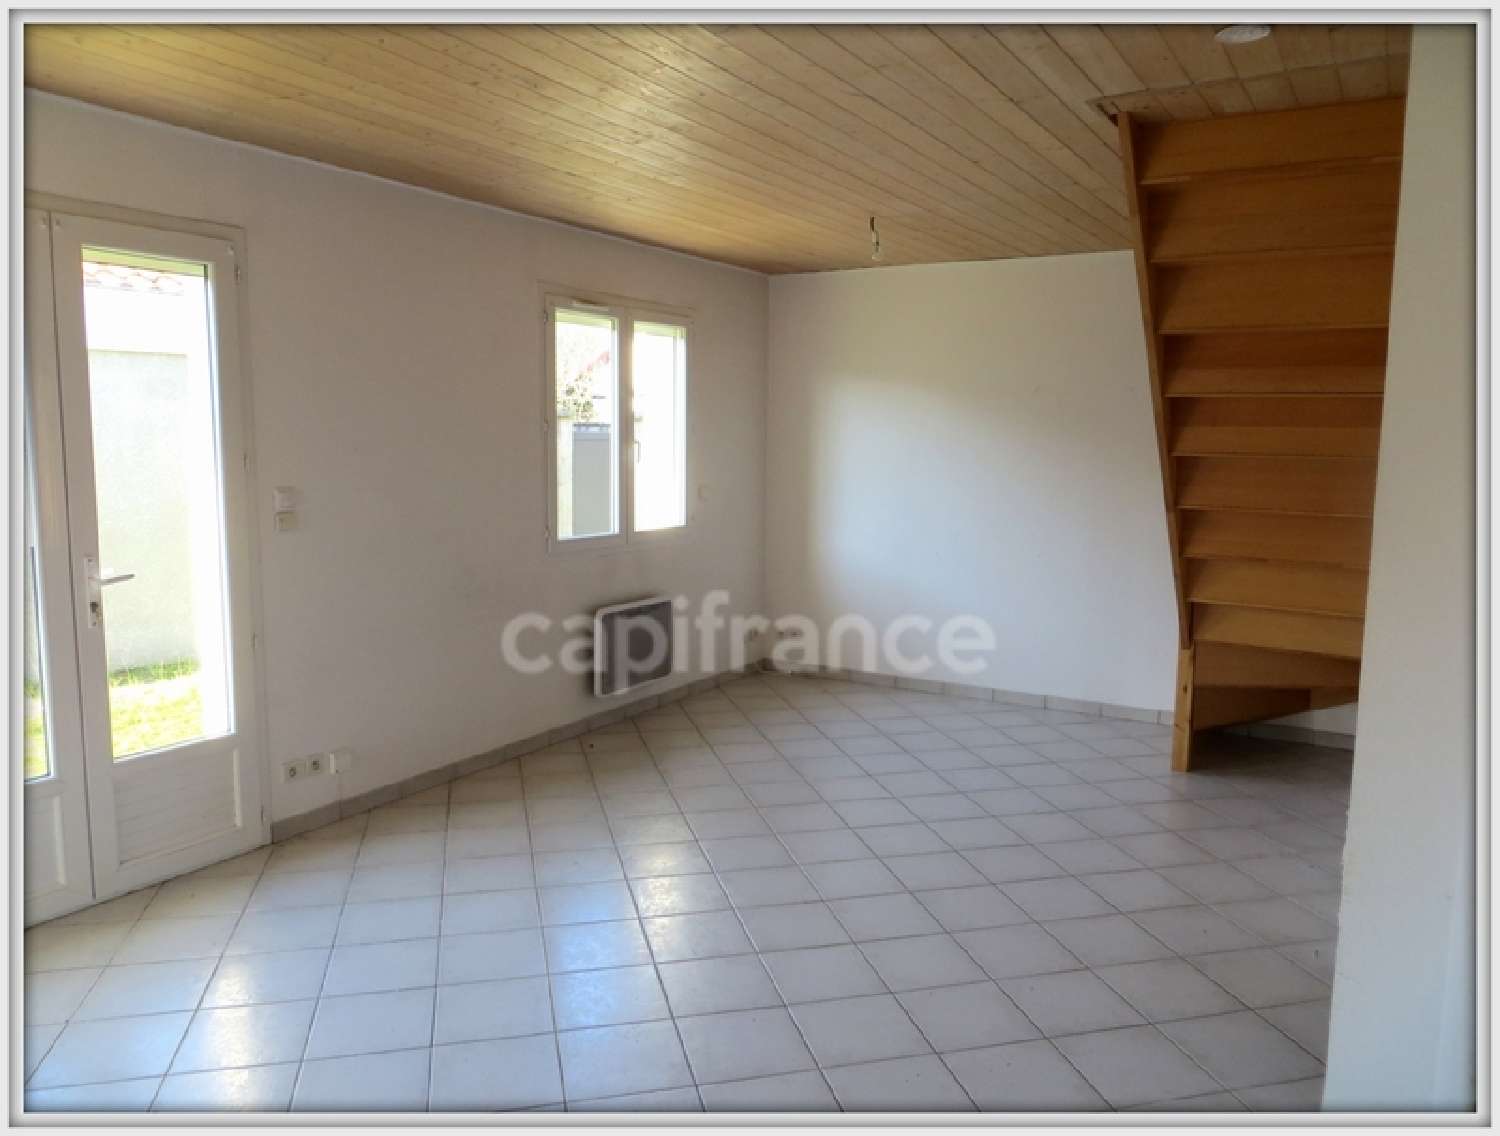  for sale apartment Lanton Gironde 2